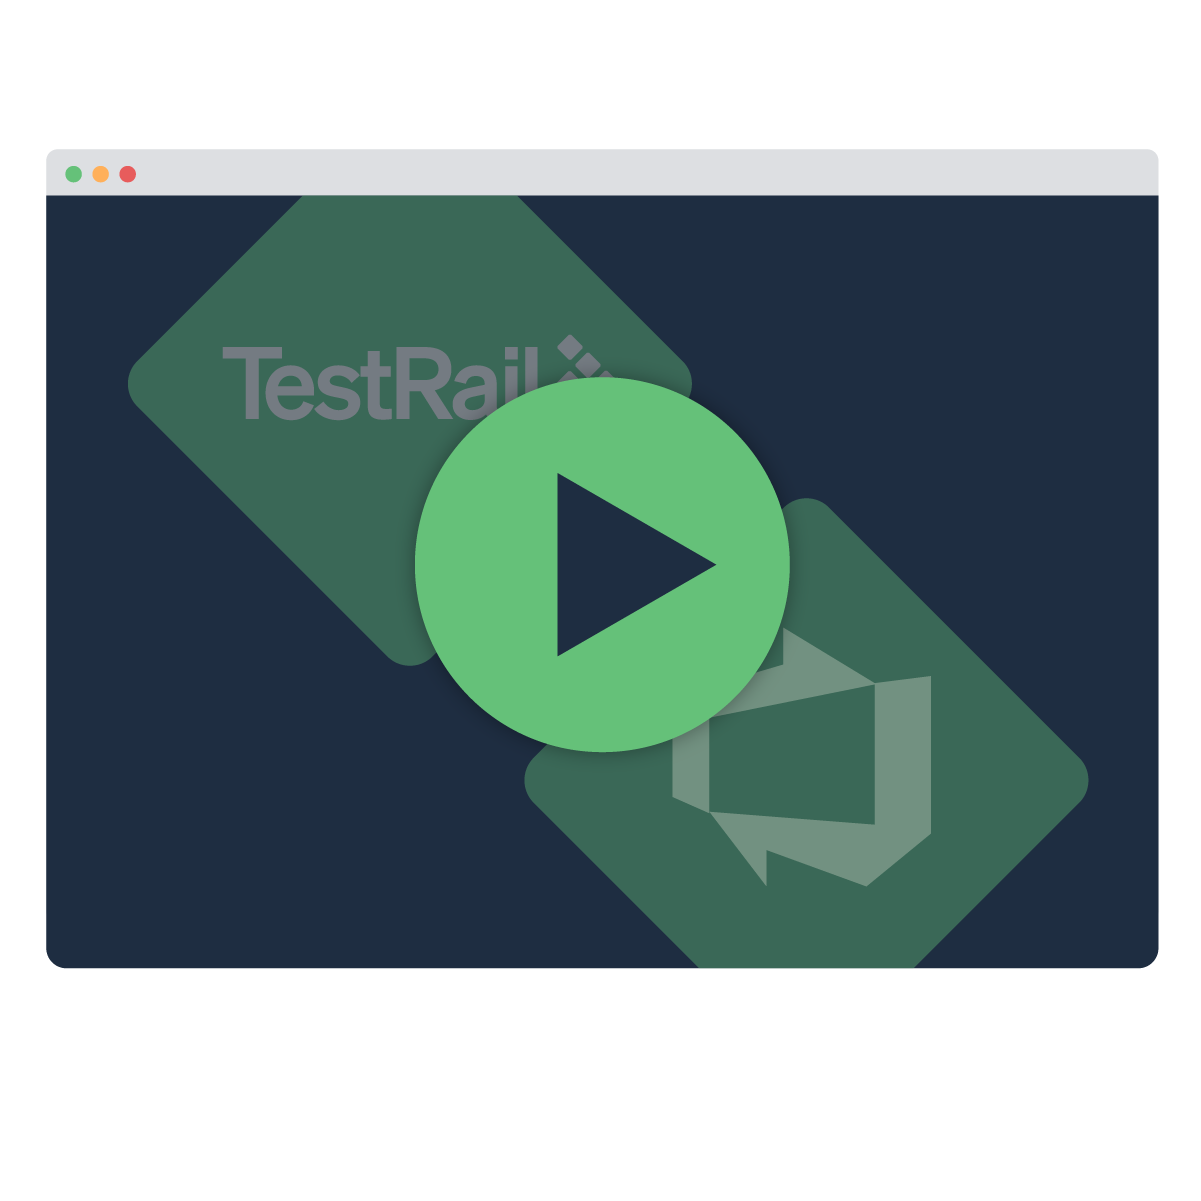 Integrating Azure DevOps with TestRail